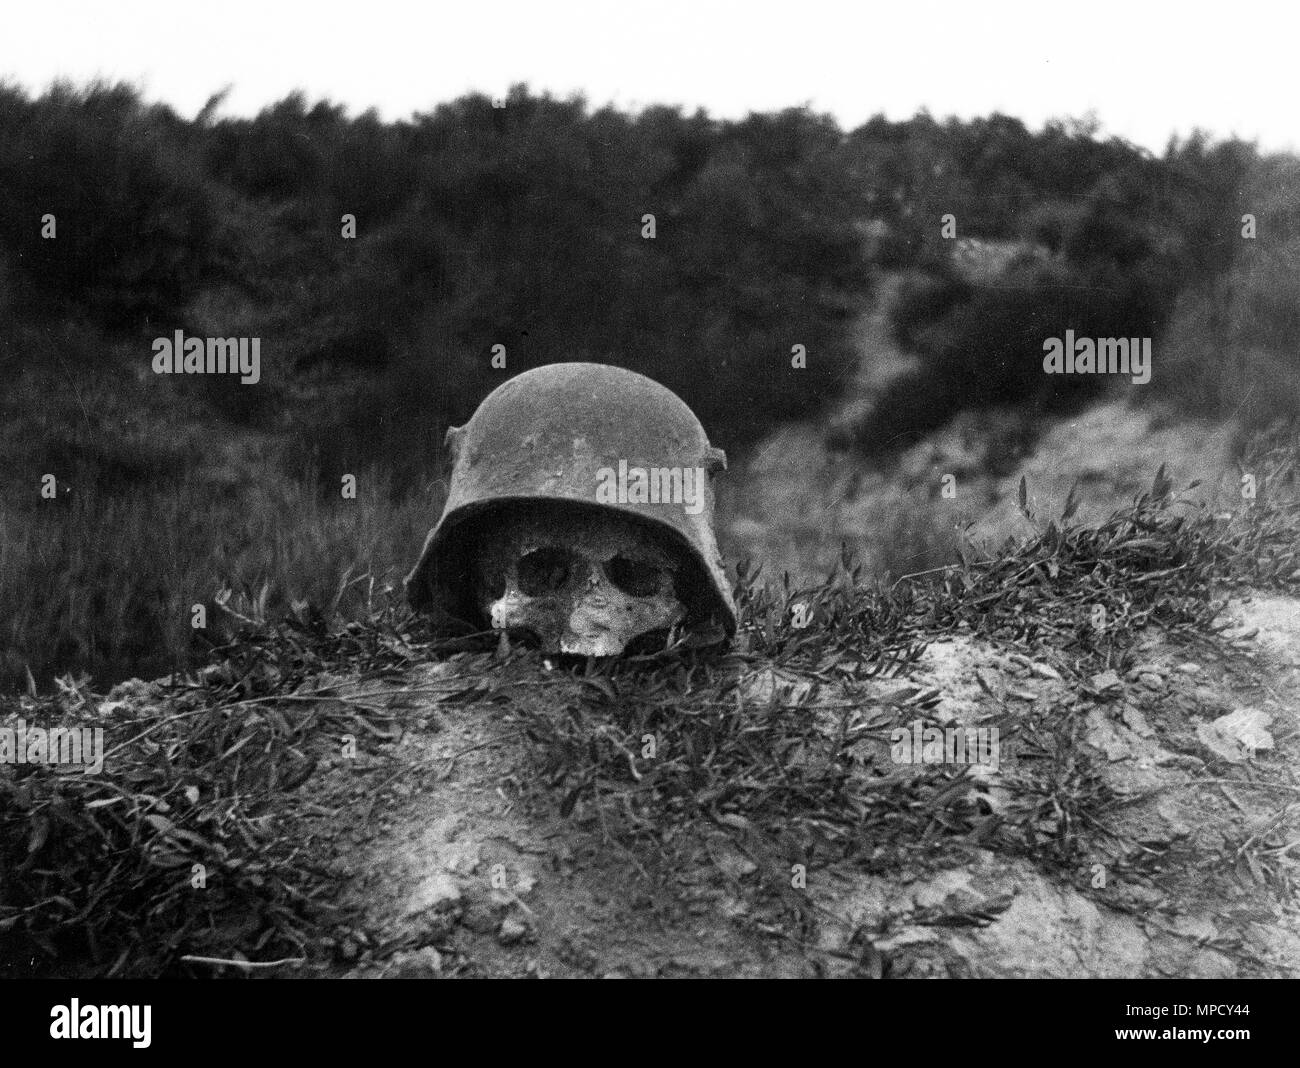 Crâne humain à l'intérieur de casque militaire allemand Seconde Guerre mondiale Un Verdun France 1918 Banque D'Images